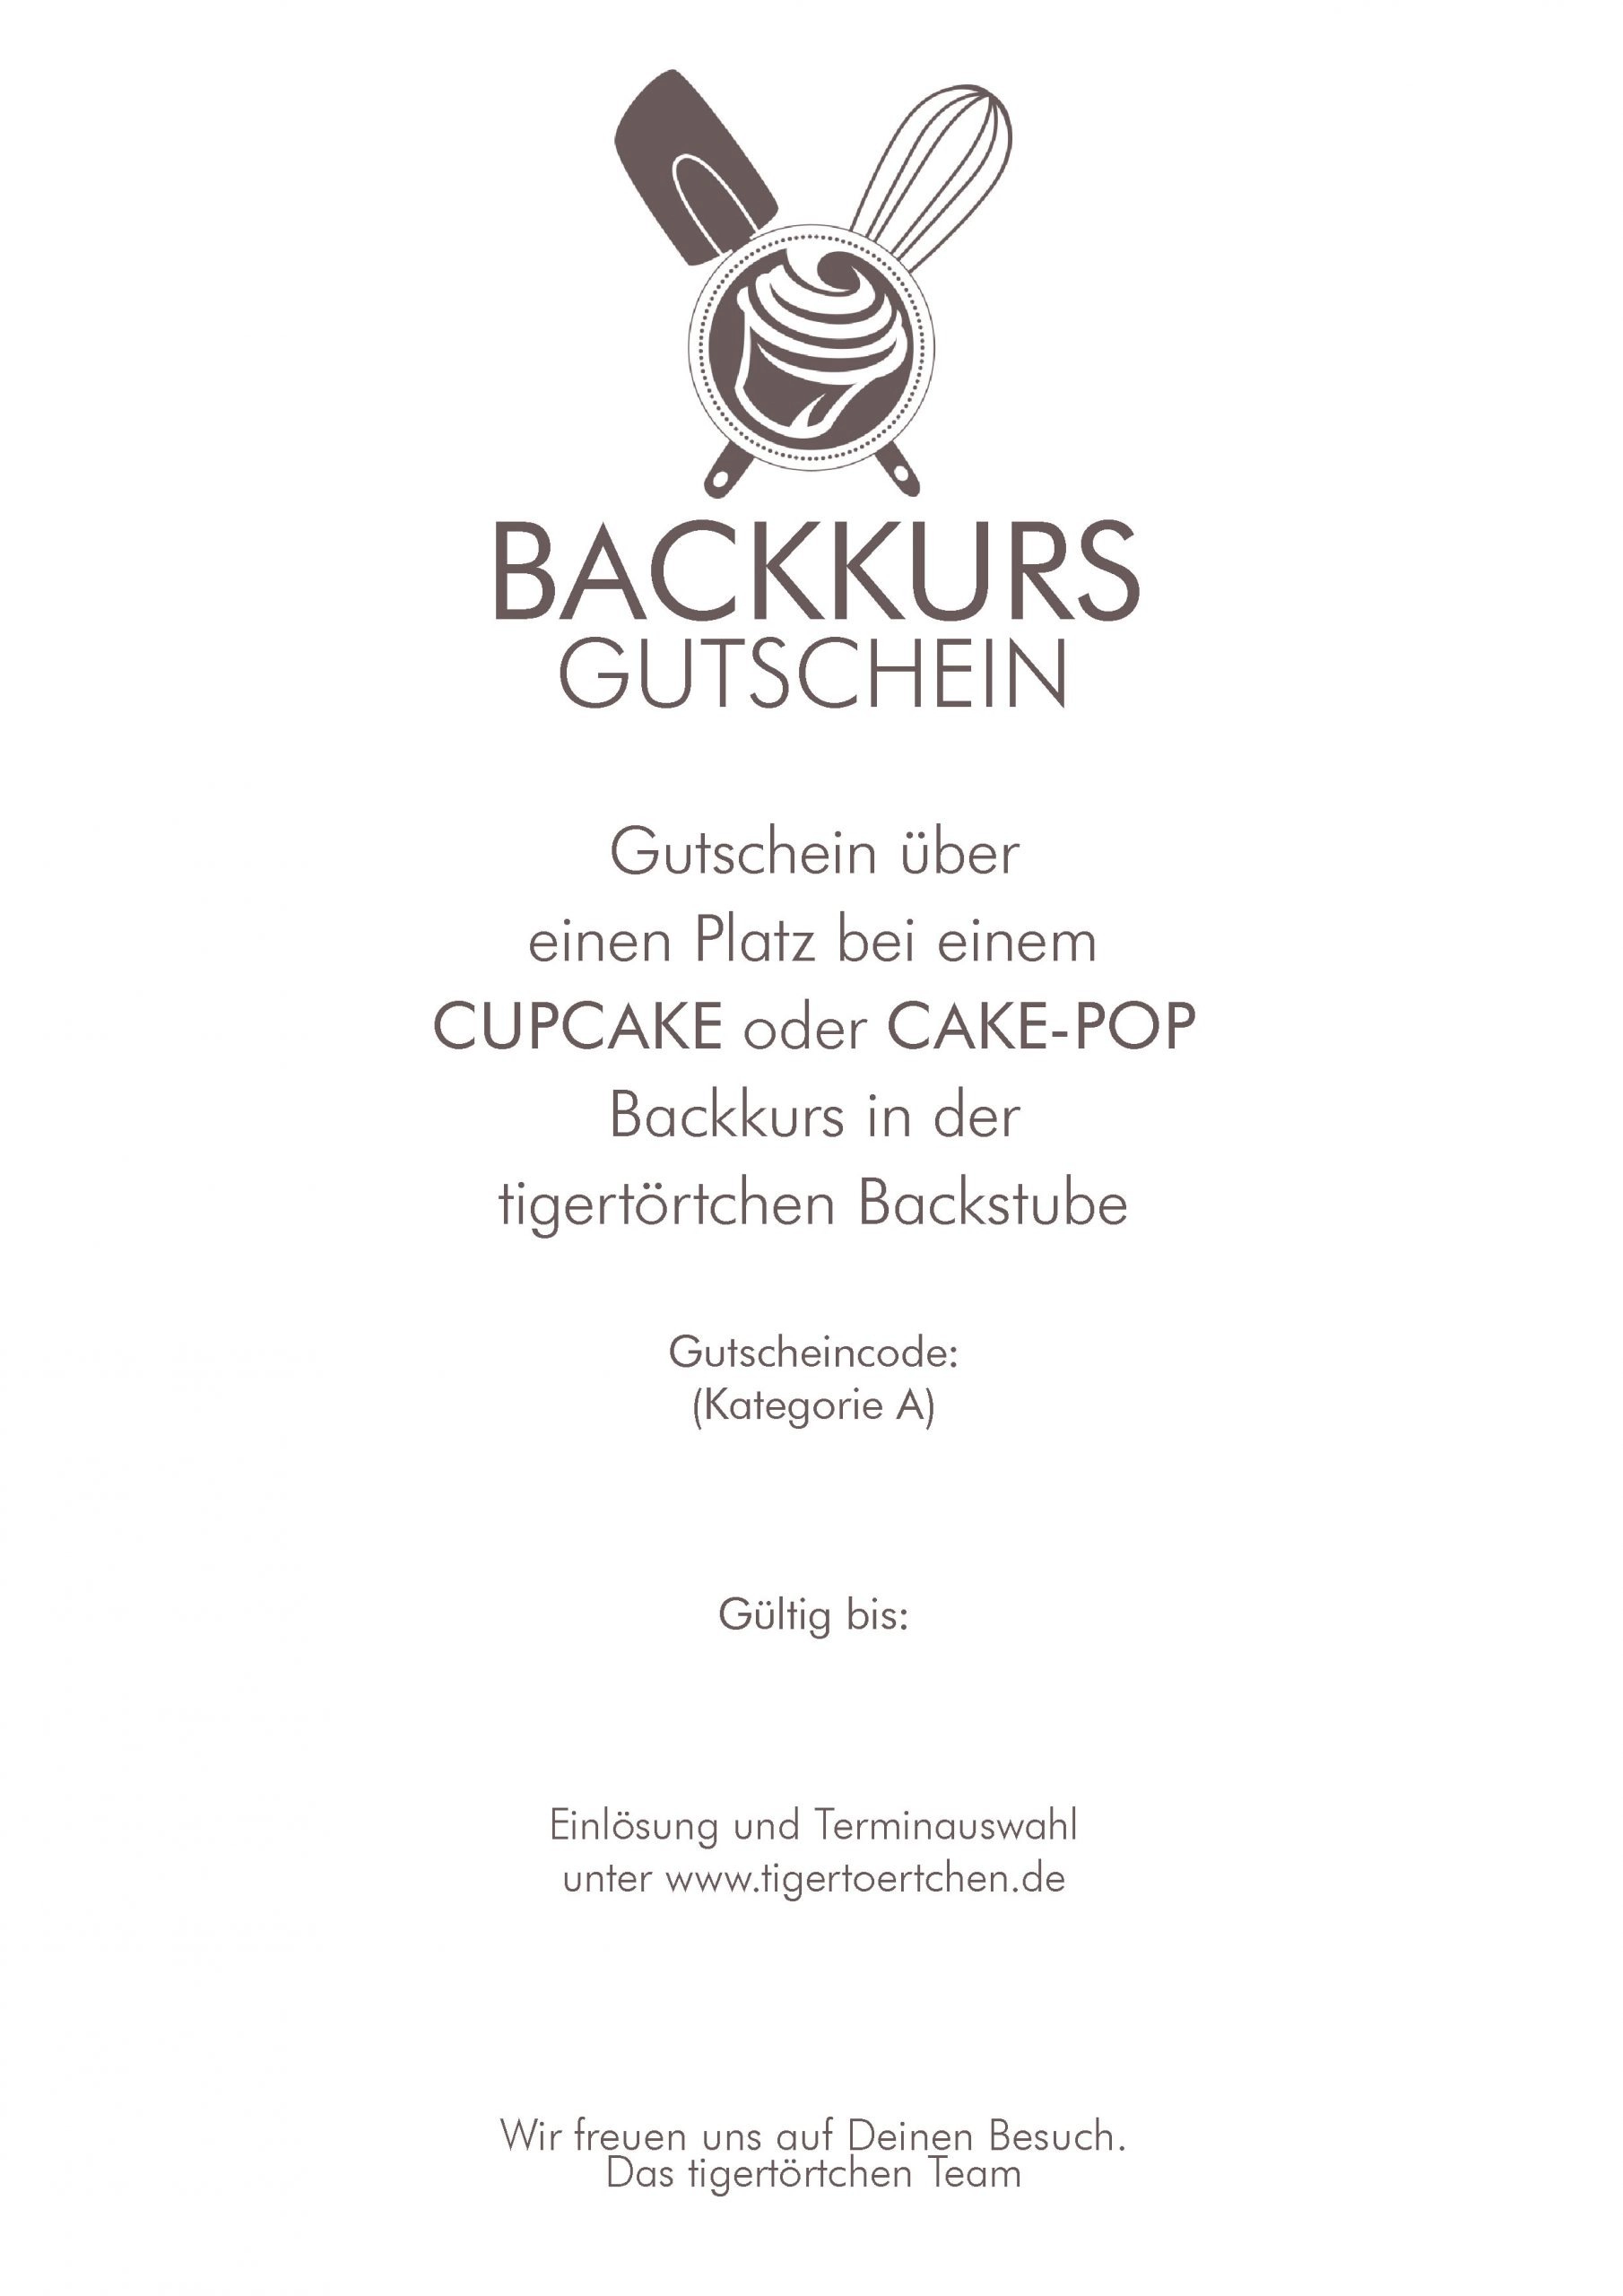 Backkurs-Gutschein - Cupcake & Cake-Pop Berlin - tigertörtchen